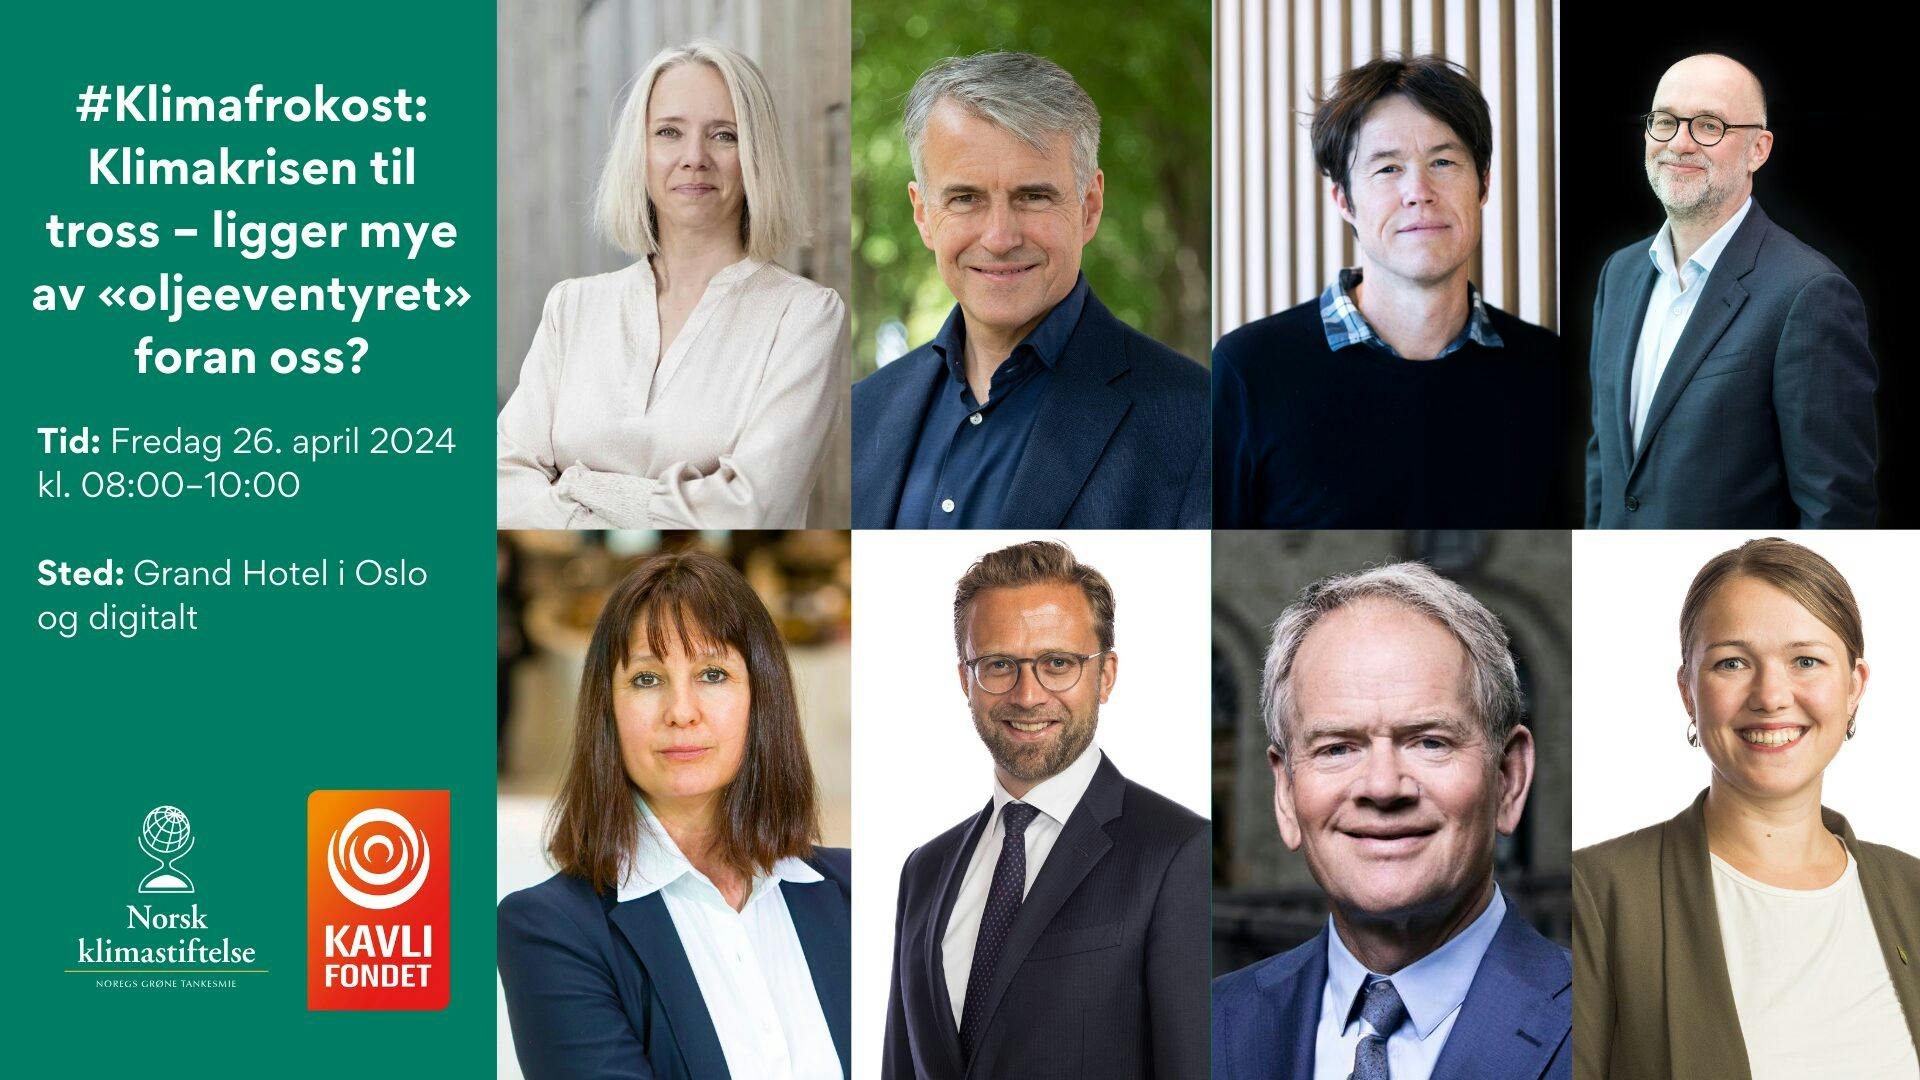 Markedsføringsbilde for en klimakonferanse med portretter av syv ulike foredragsholdere, arrangementsdetaljer og logoer fra Norsk klimastiftelse og kavli fondet.